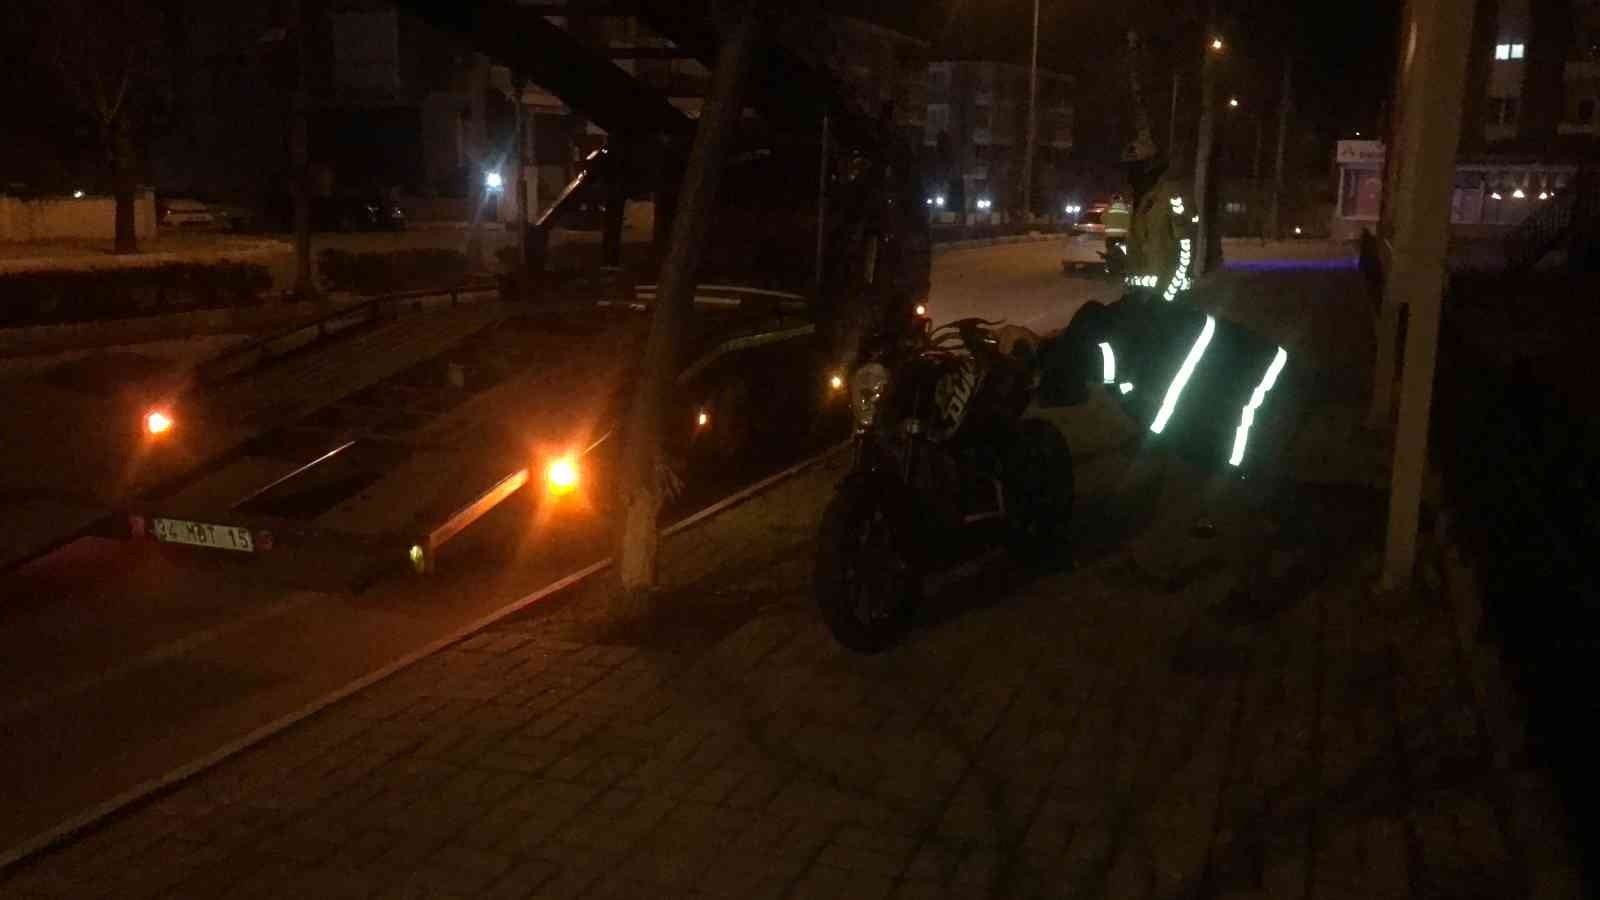 Edirne’de otomobille çarpışan motosiklet sürücüsü yaralandı #edirne